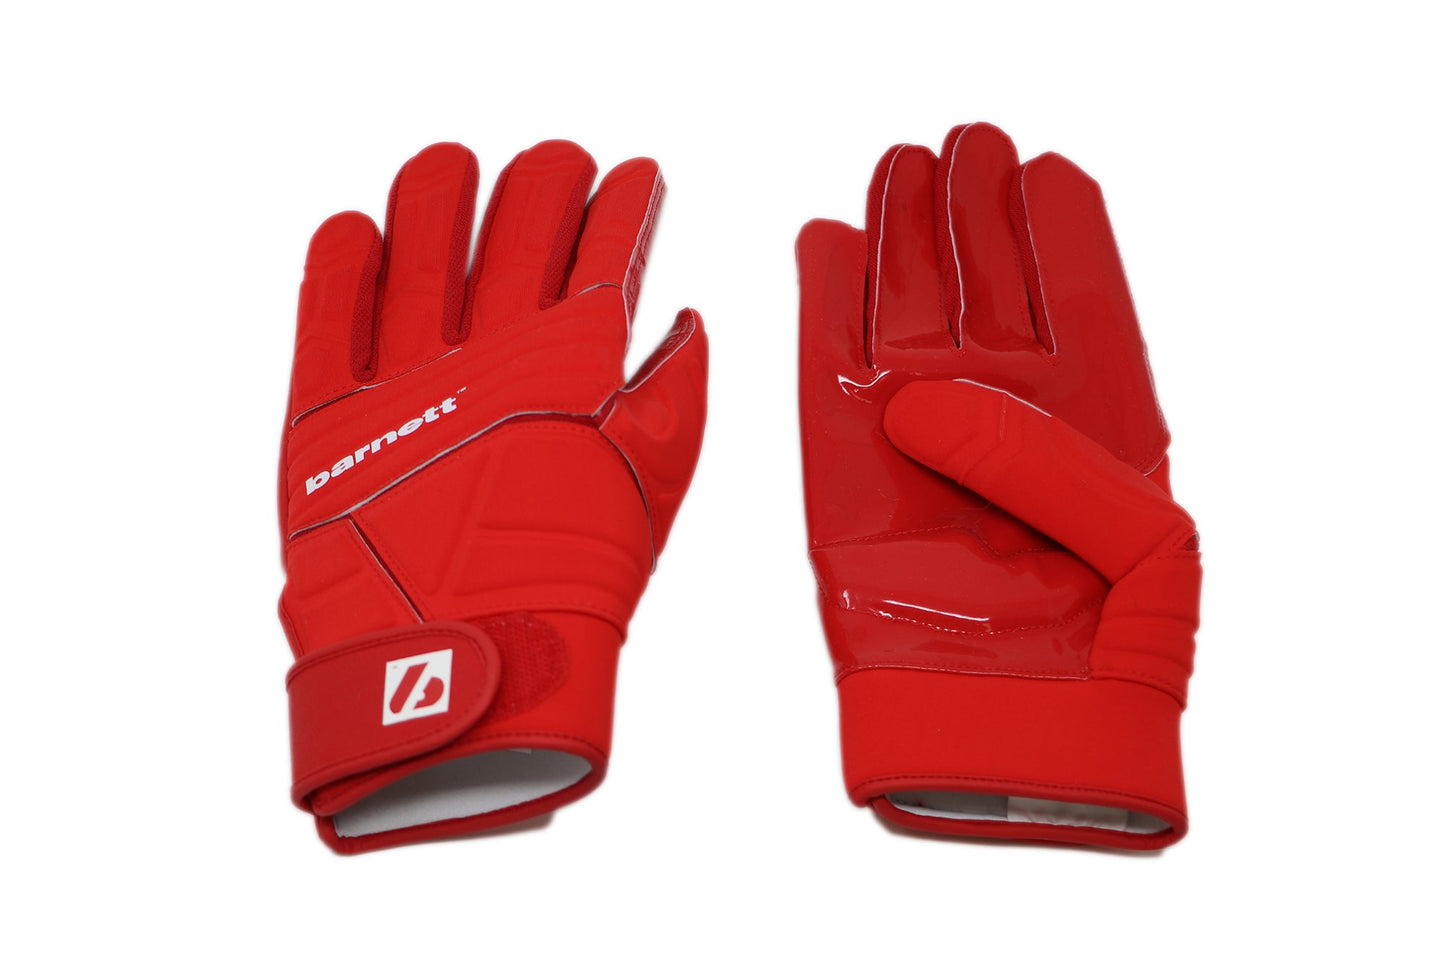 FLG-03 guantes de fútbol americano pro linemen, OL,DL, rojo